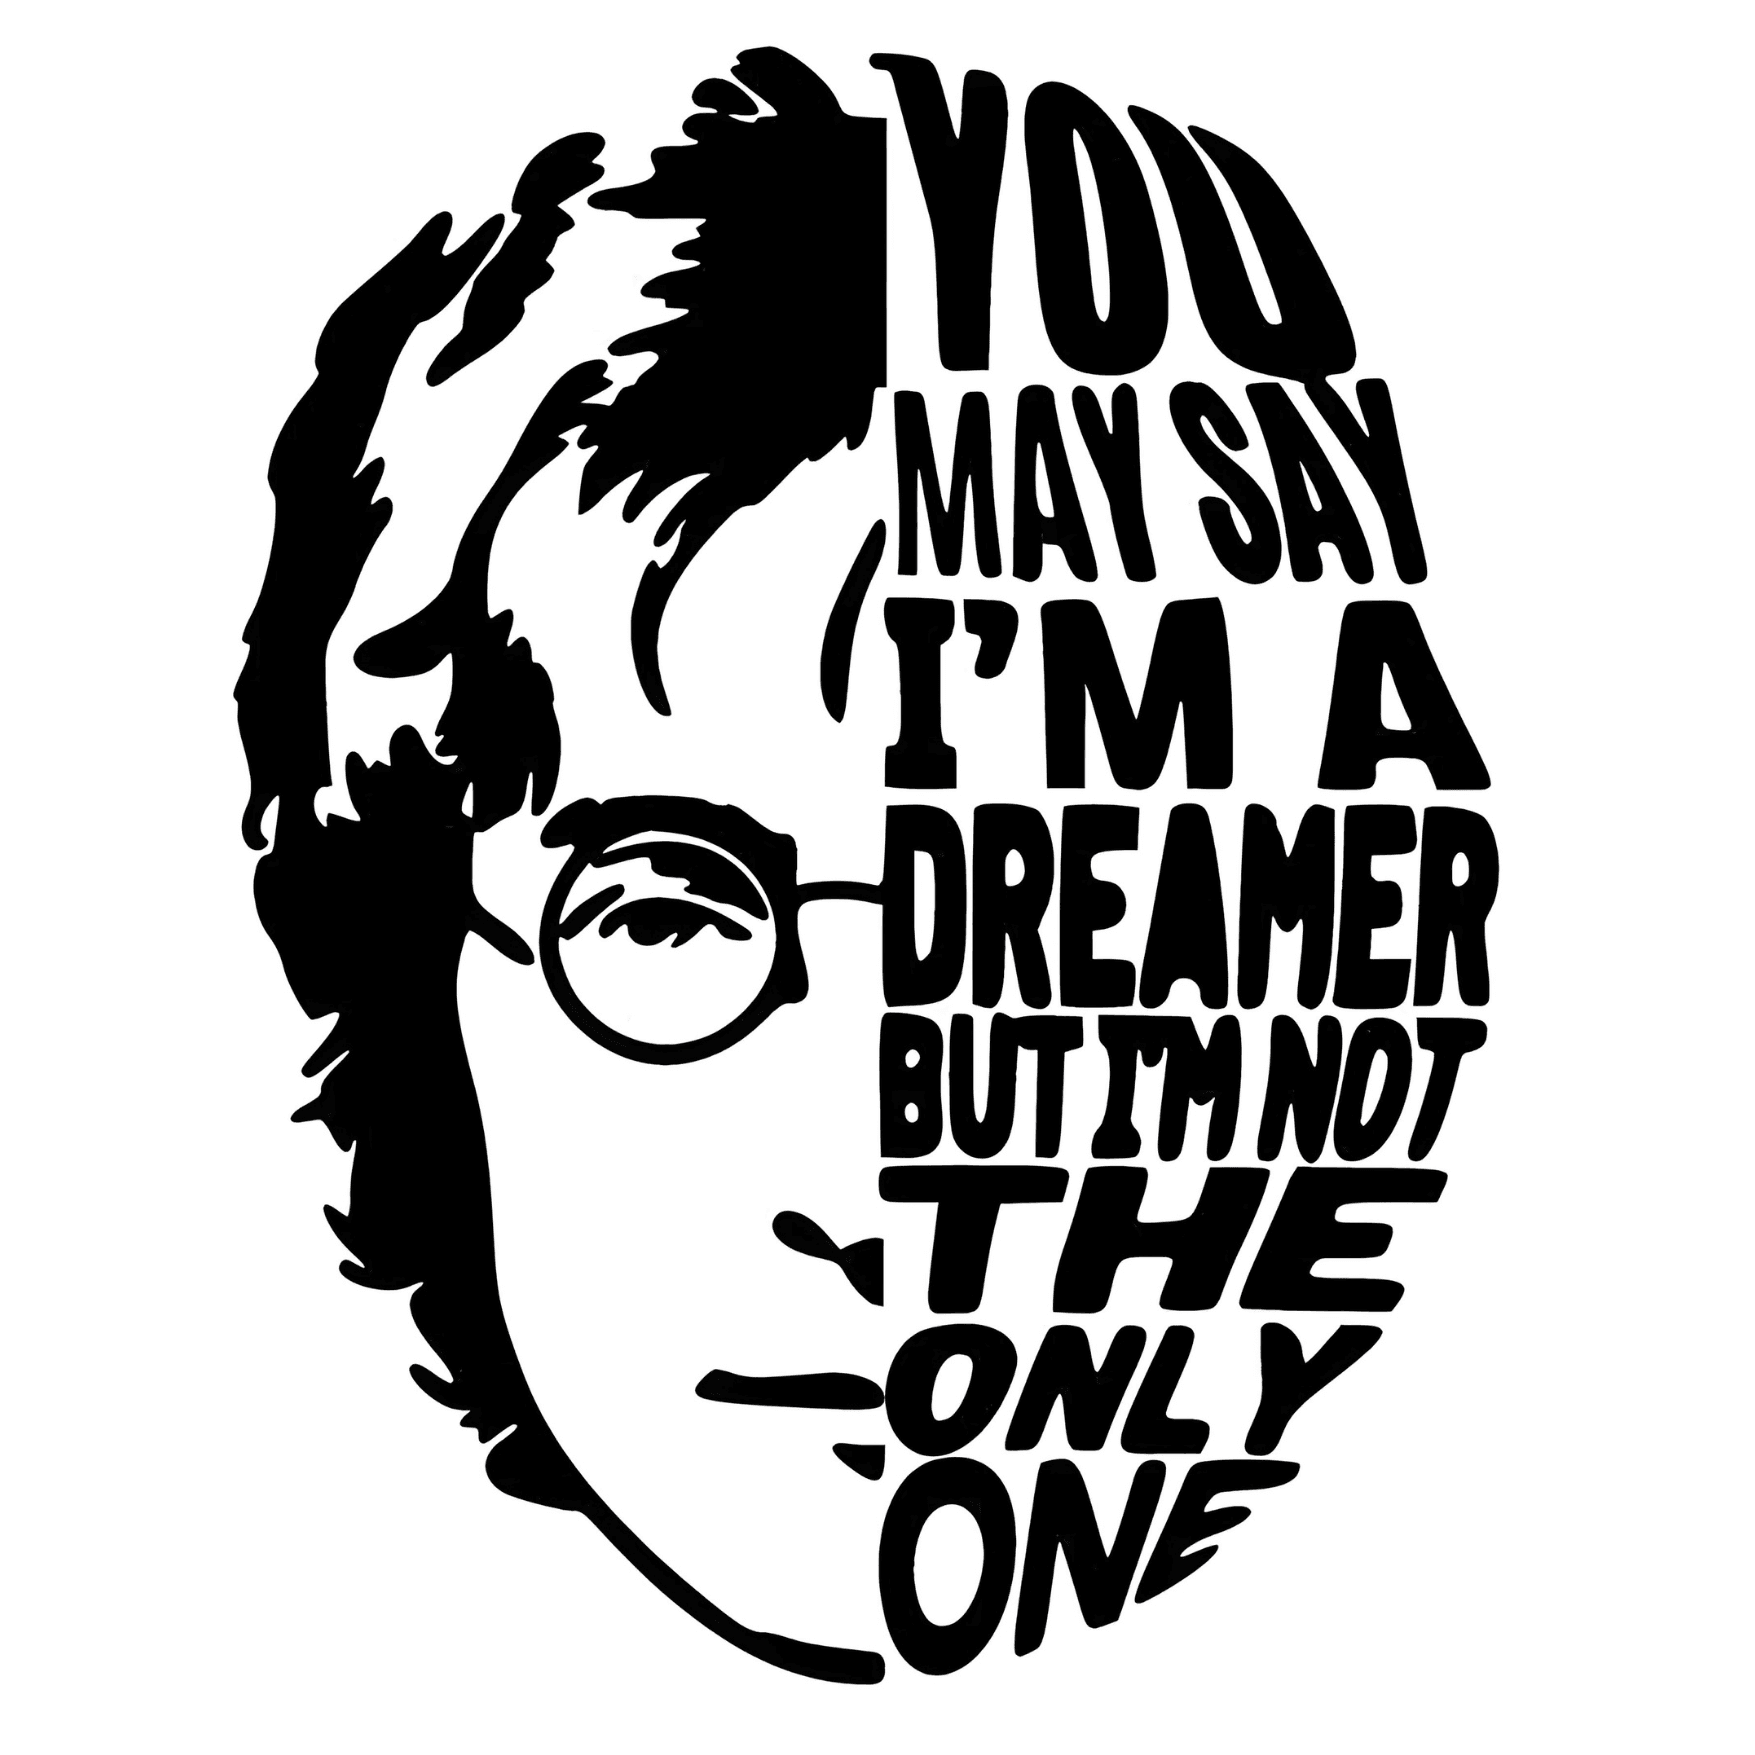 John Lennon sticker 6cm